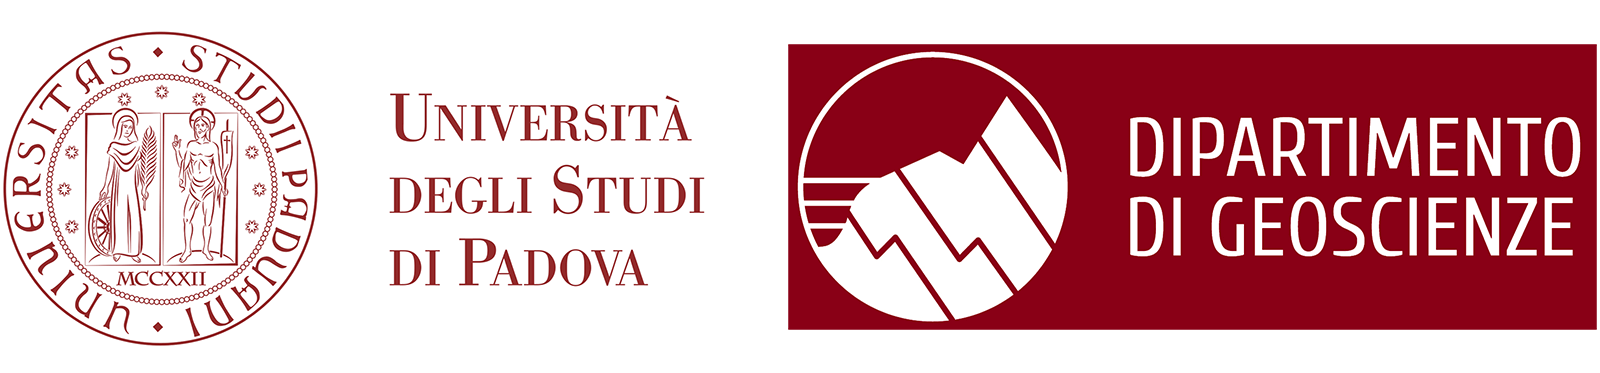 Università di Padova Dipartimento di Geoscienze